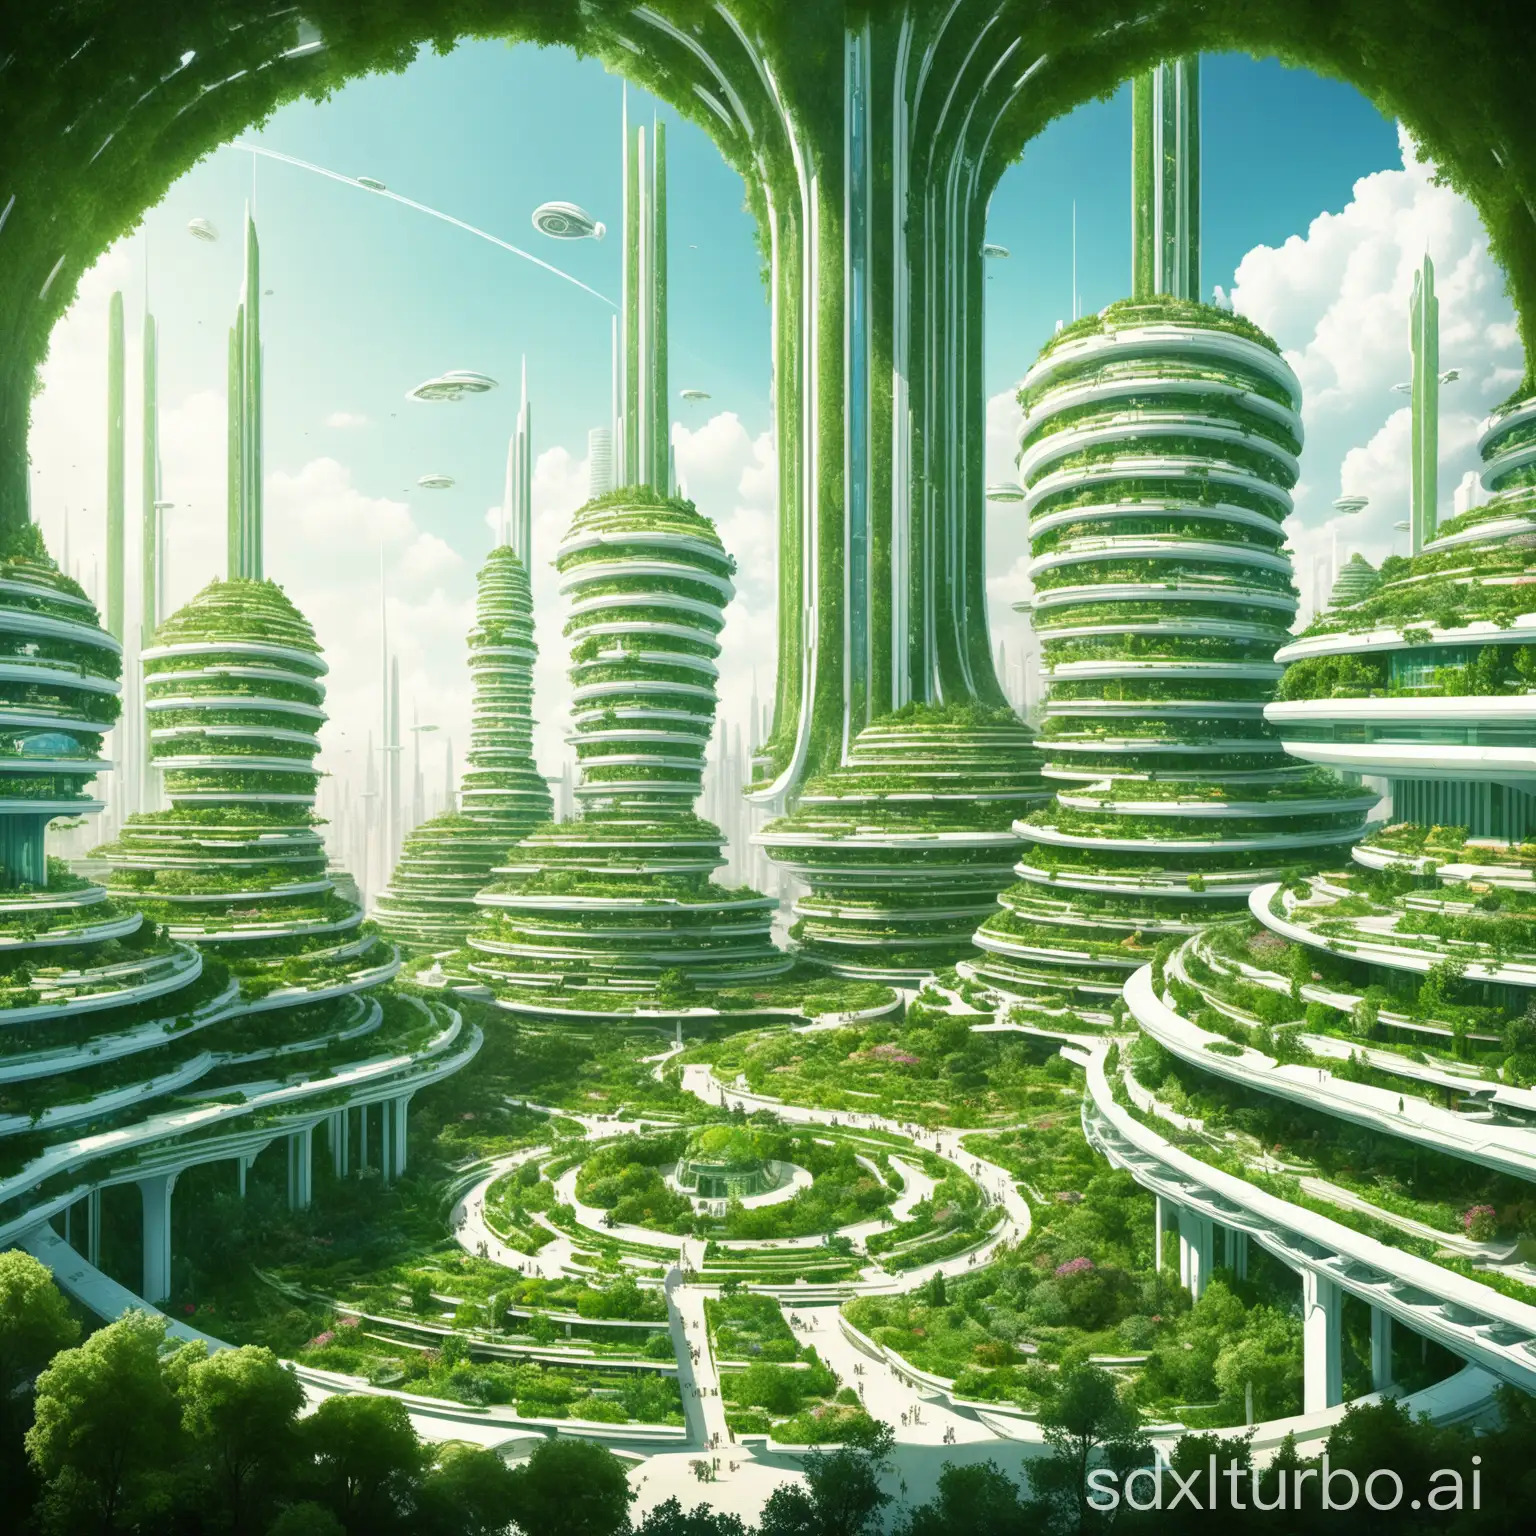 Futuristic-Utopian-City-with-Bozar-Architecture-and-Abundant-Greenery